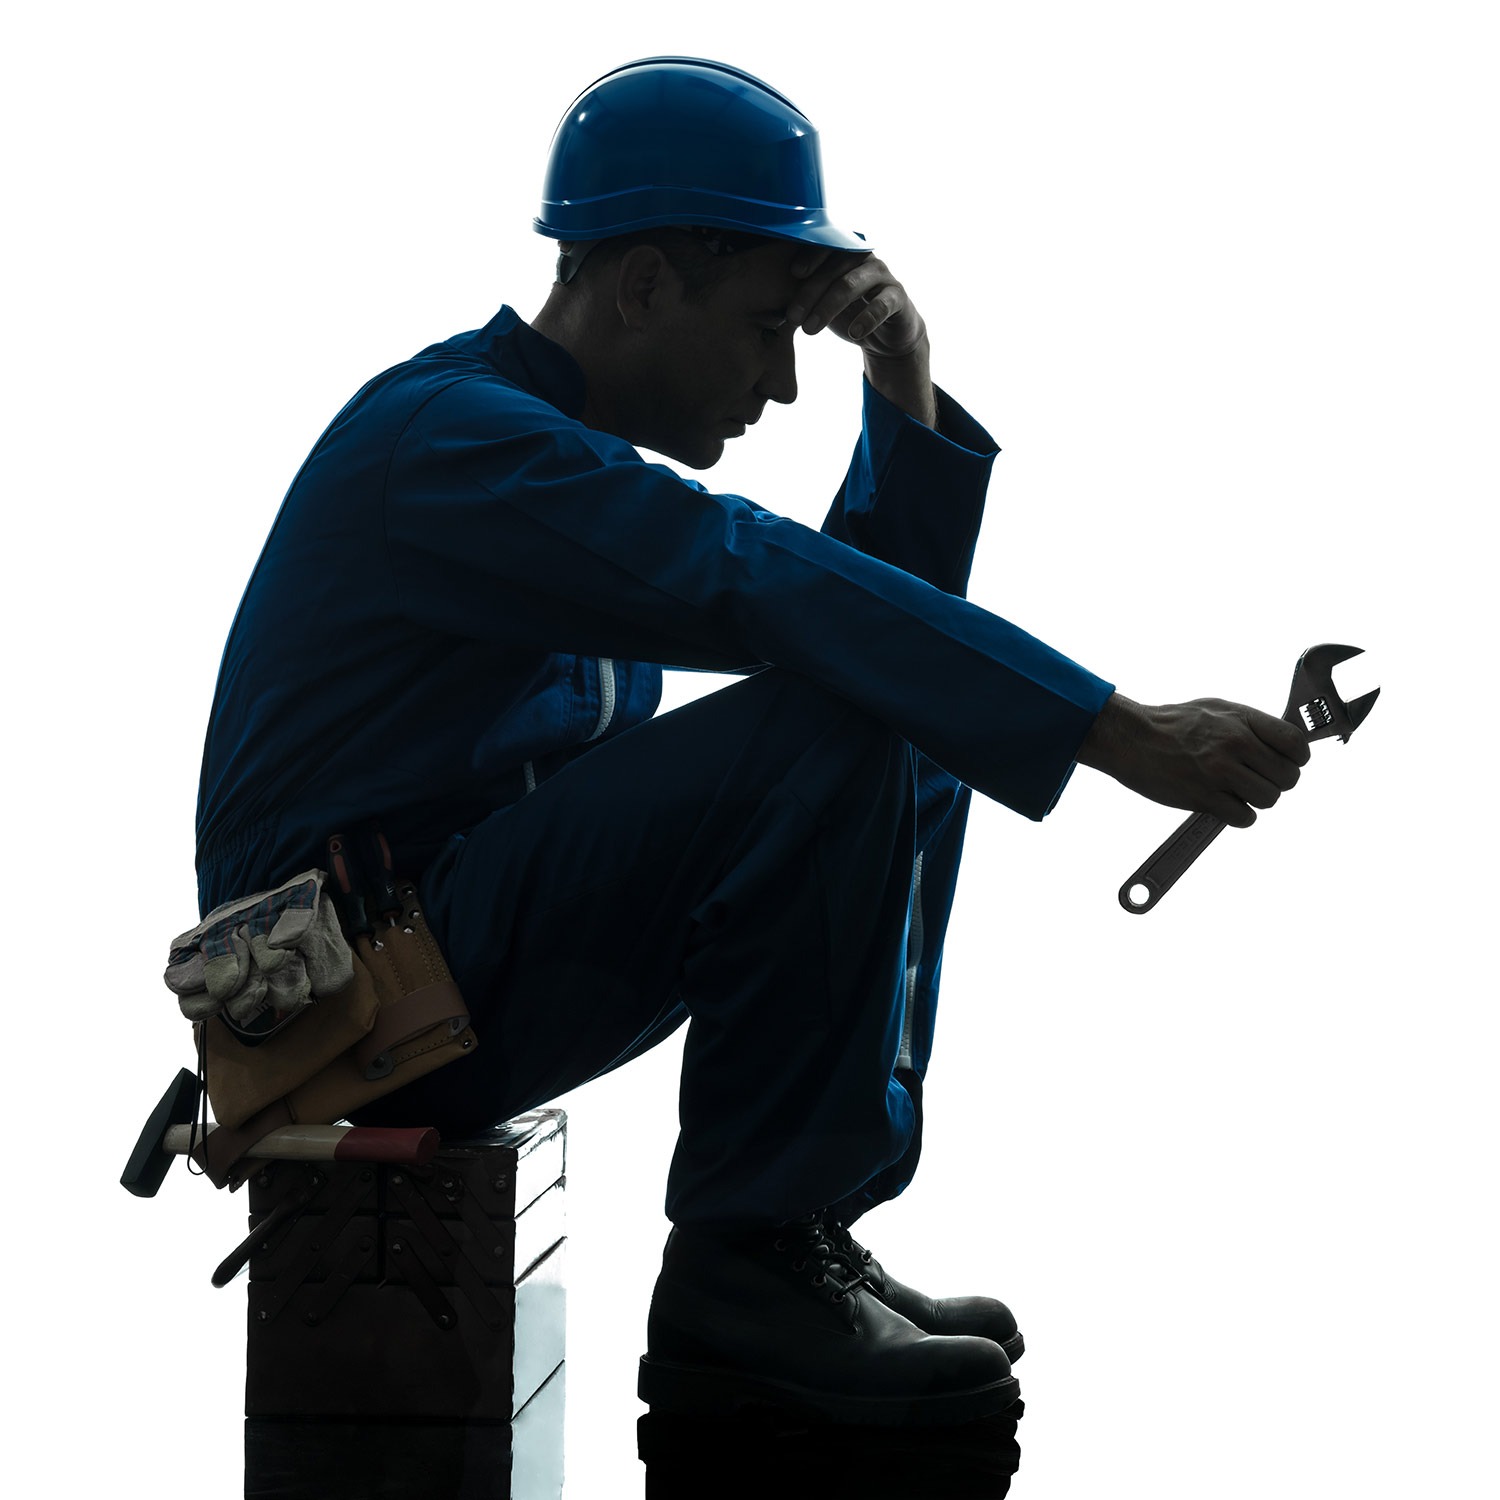 Handwerker sitzt mit aufgestütztem Kopf auf einer Werkzeugkiste.